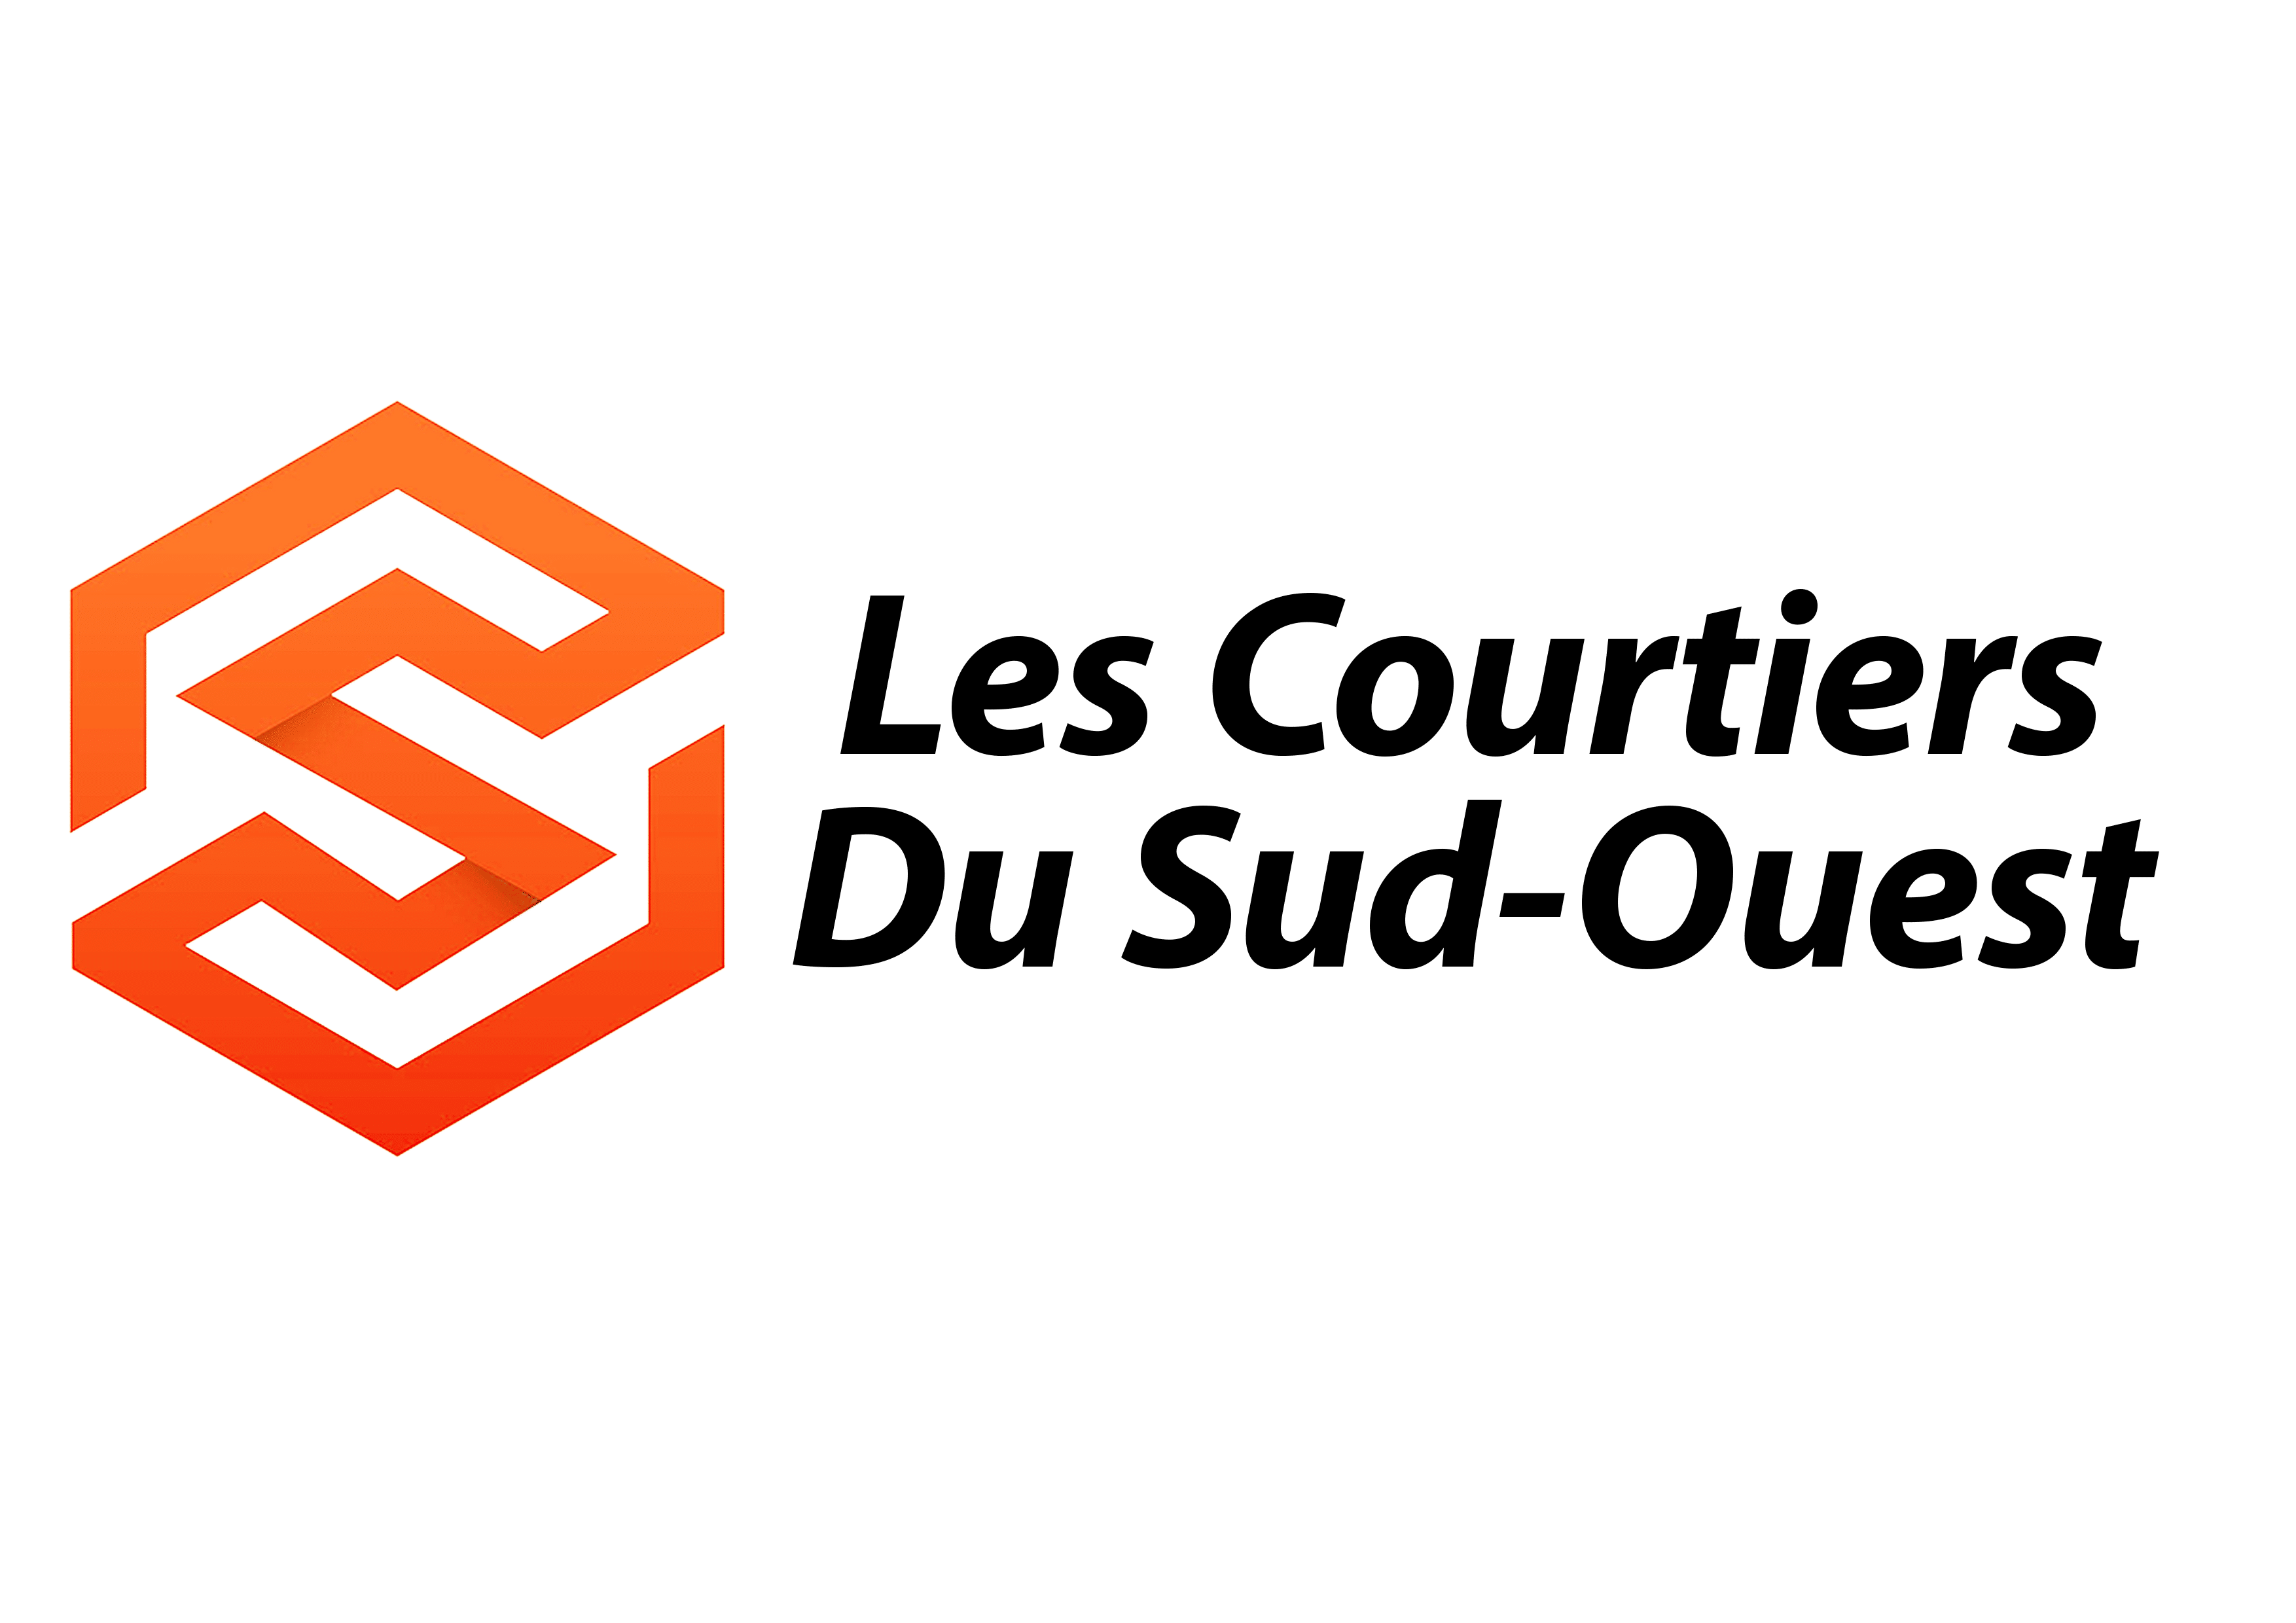 Best of Bergerac Anthony Struelens La centrale de Financement Bergerac Libourne Les Courtiers Du Sud Ouest événement 16 septembre 2021